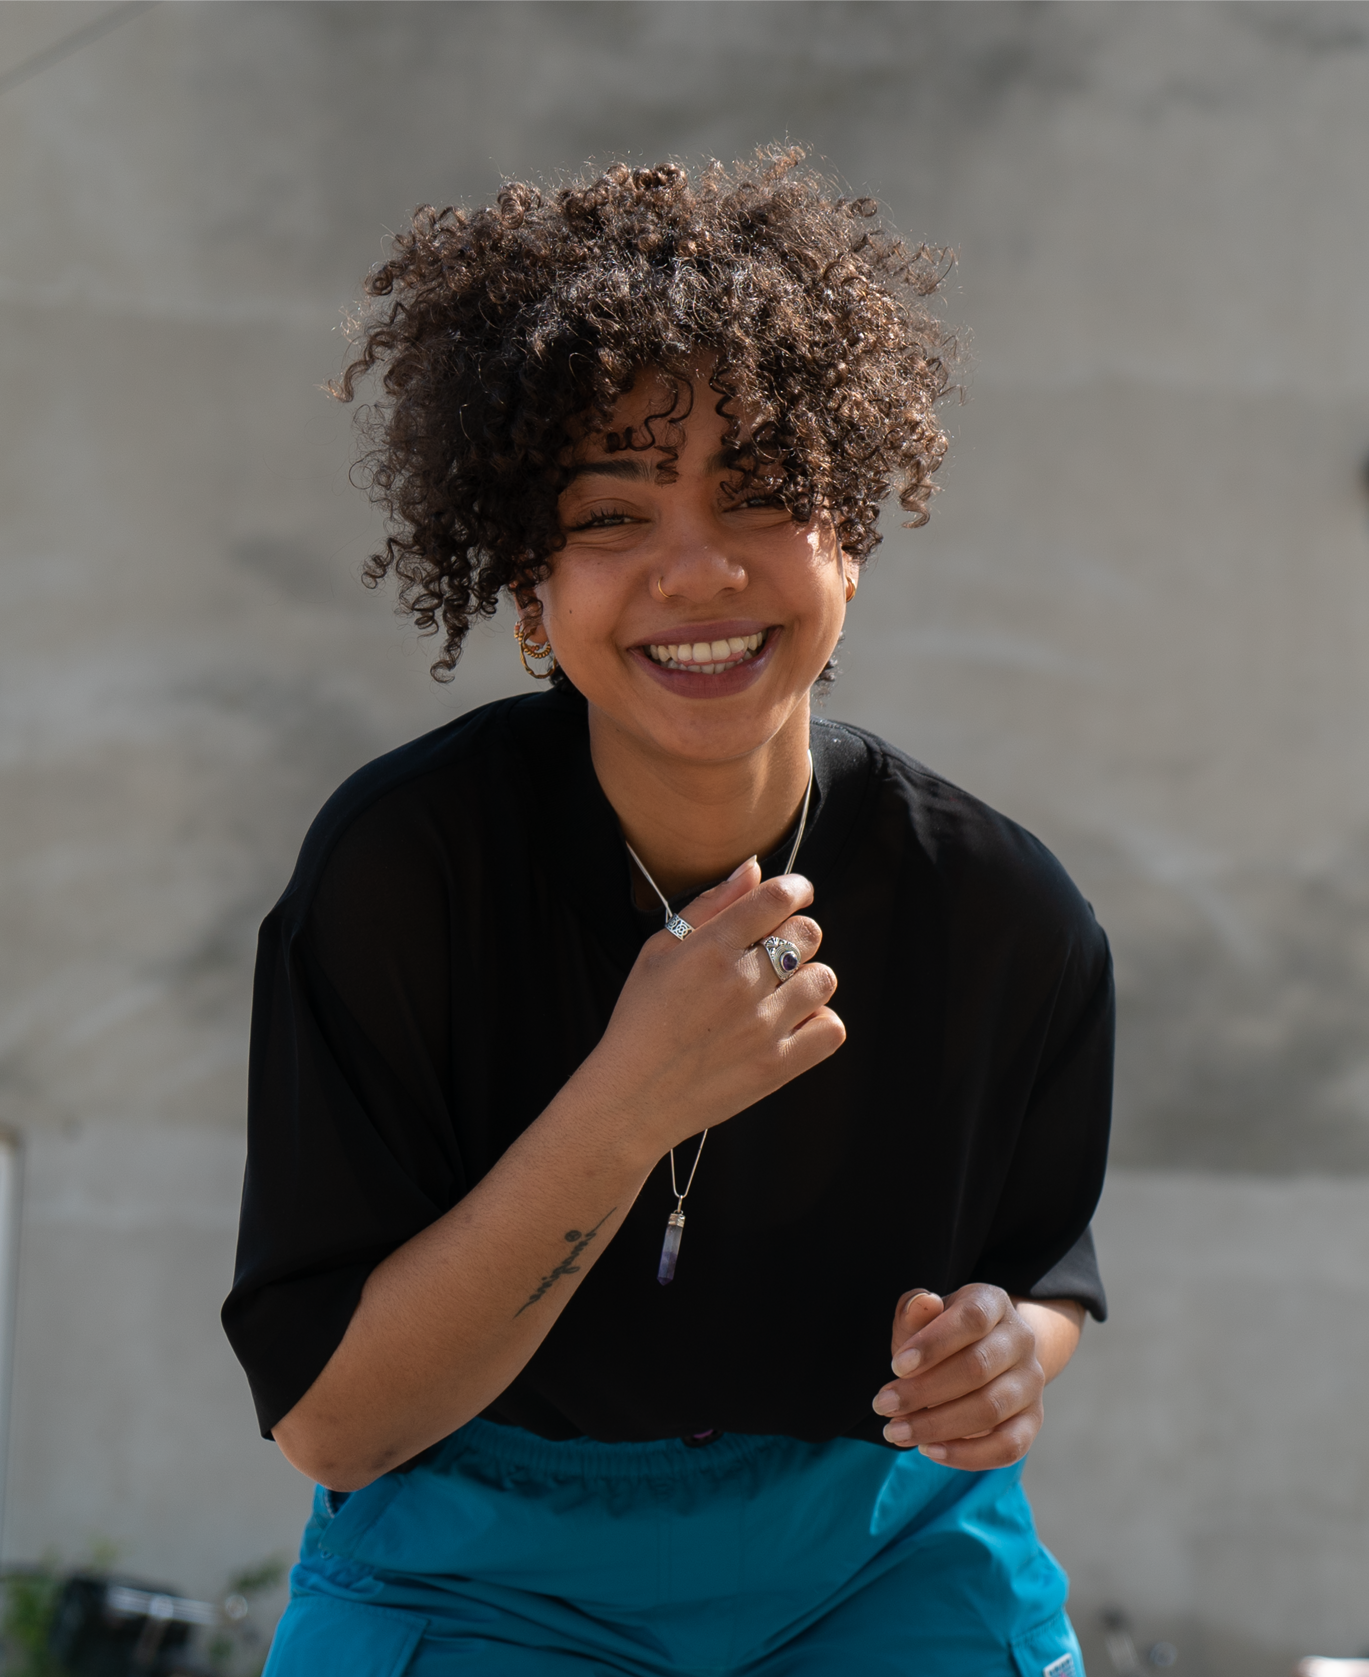 “I talk about how I experience society” – Roziena Salihu